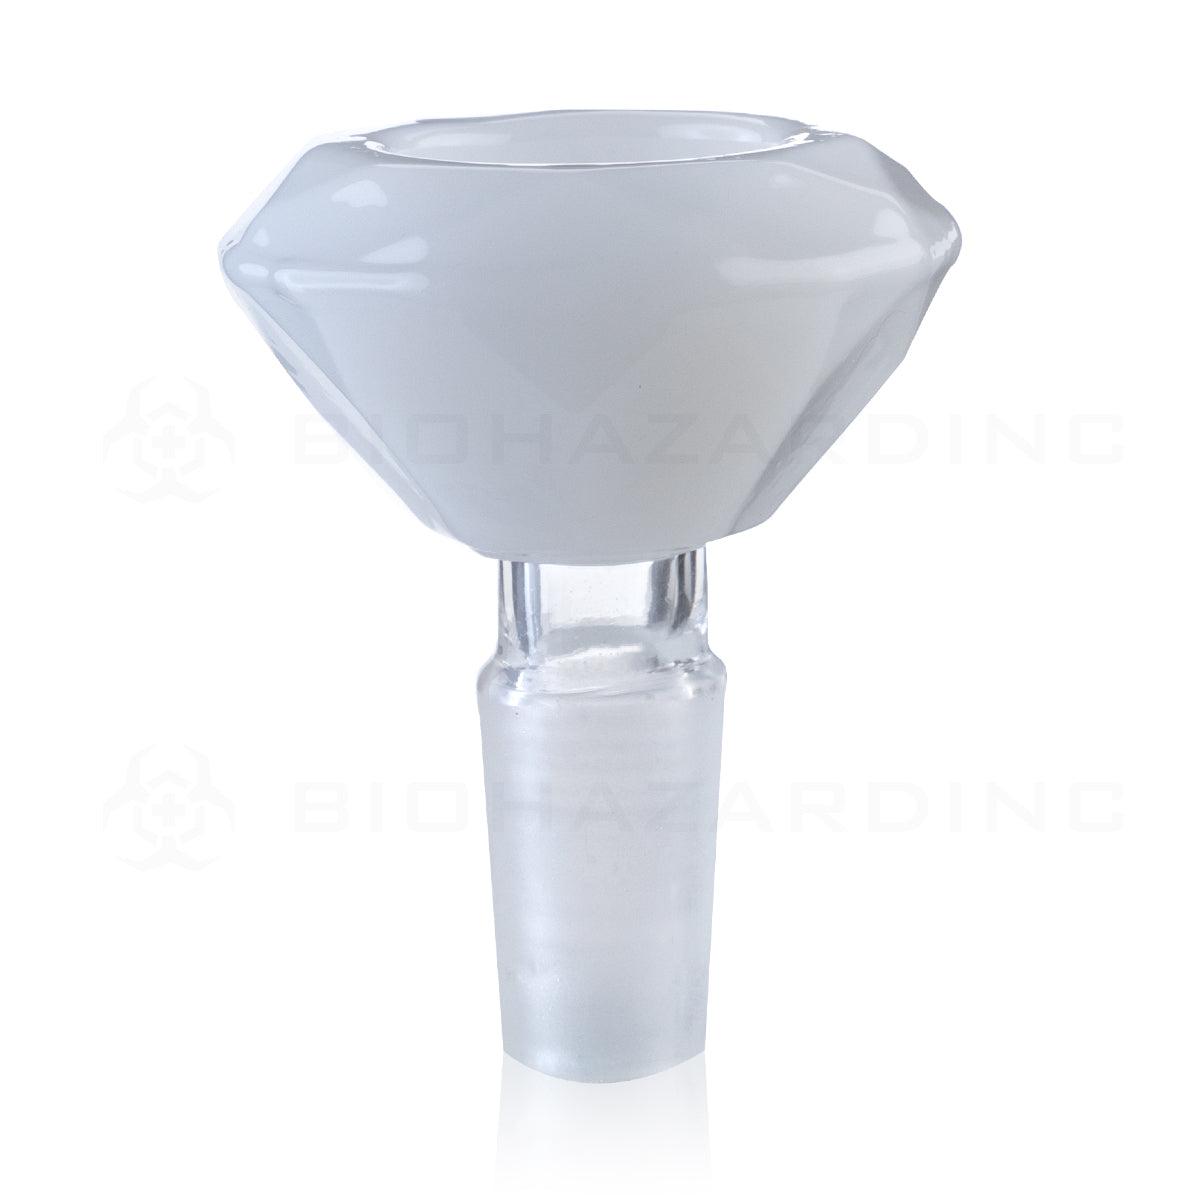 Bowl | Diamond Bowl | 14mm - White Glass Bowl Biohazard Inc   